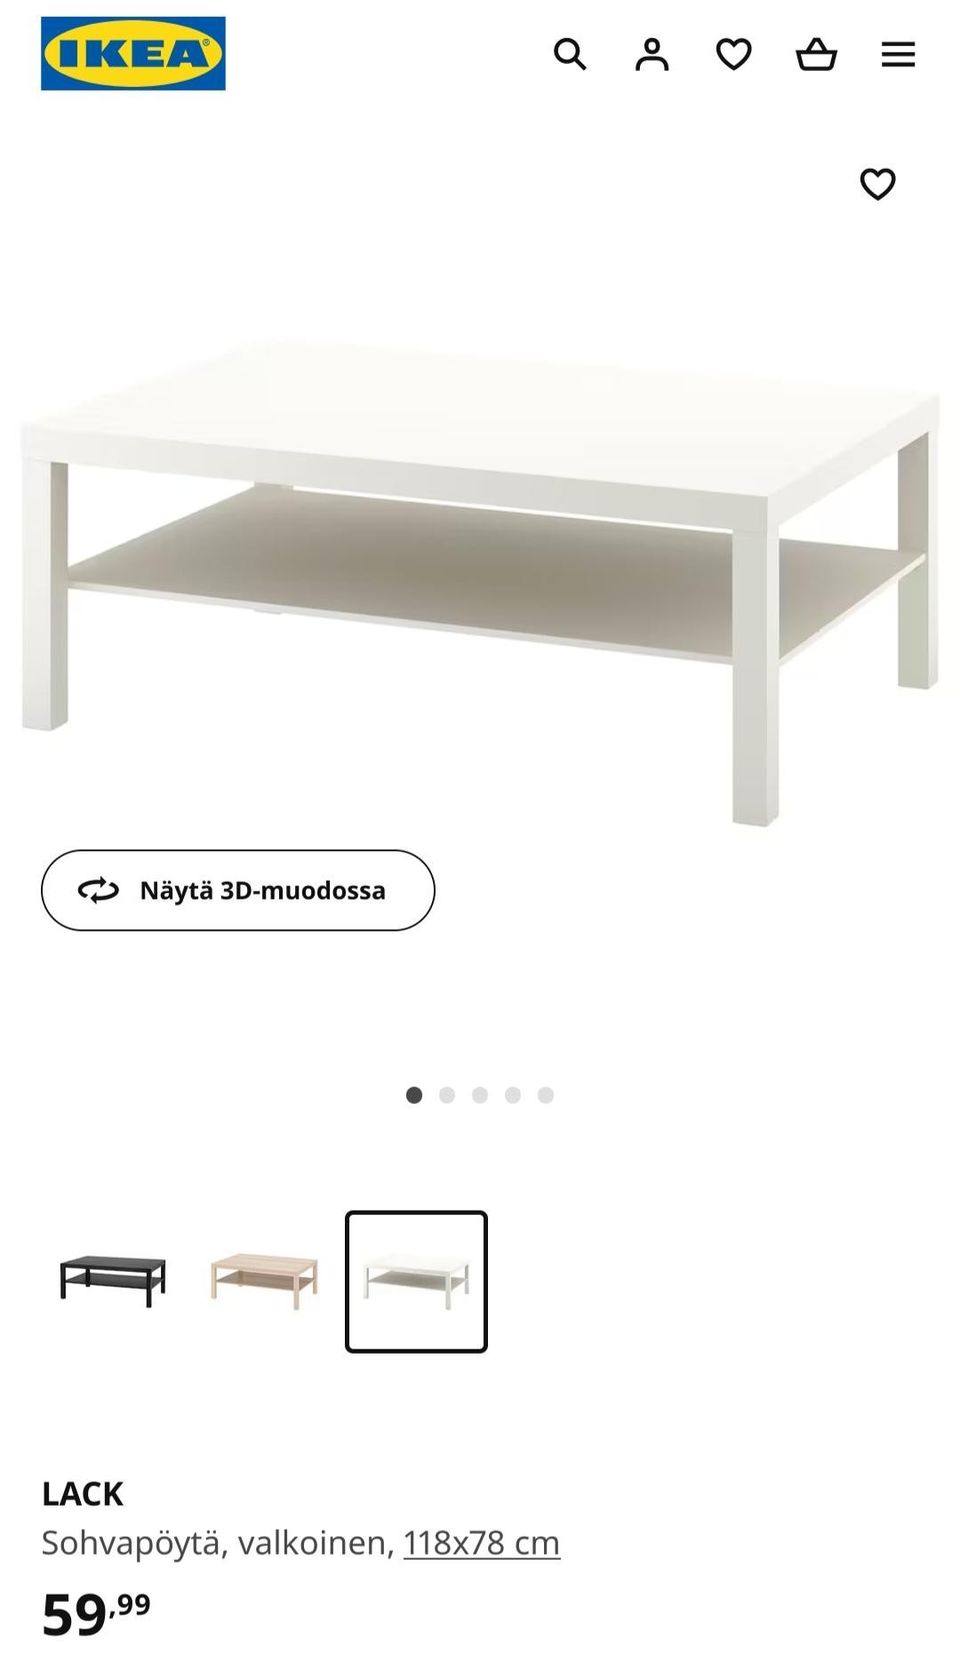 Ikea lack sohvapöytä